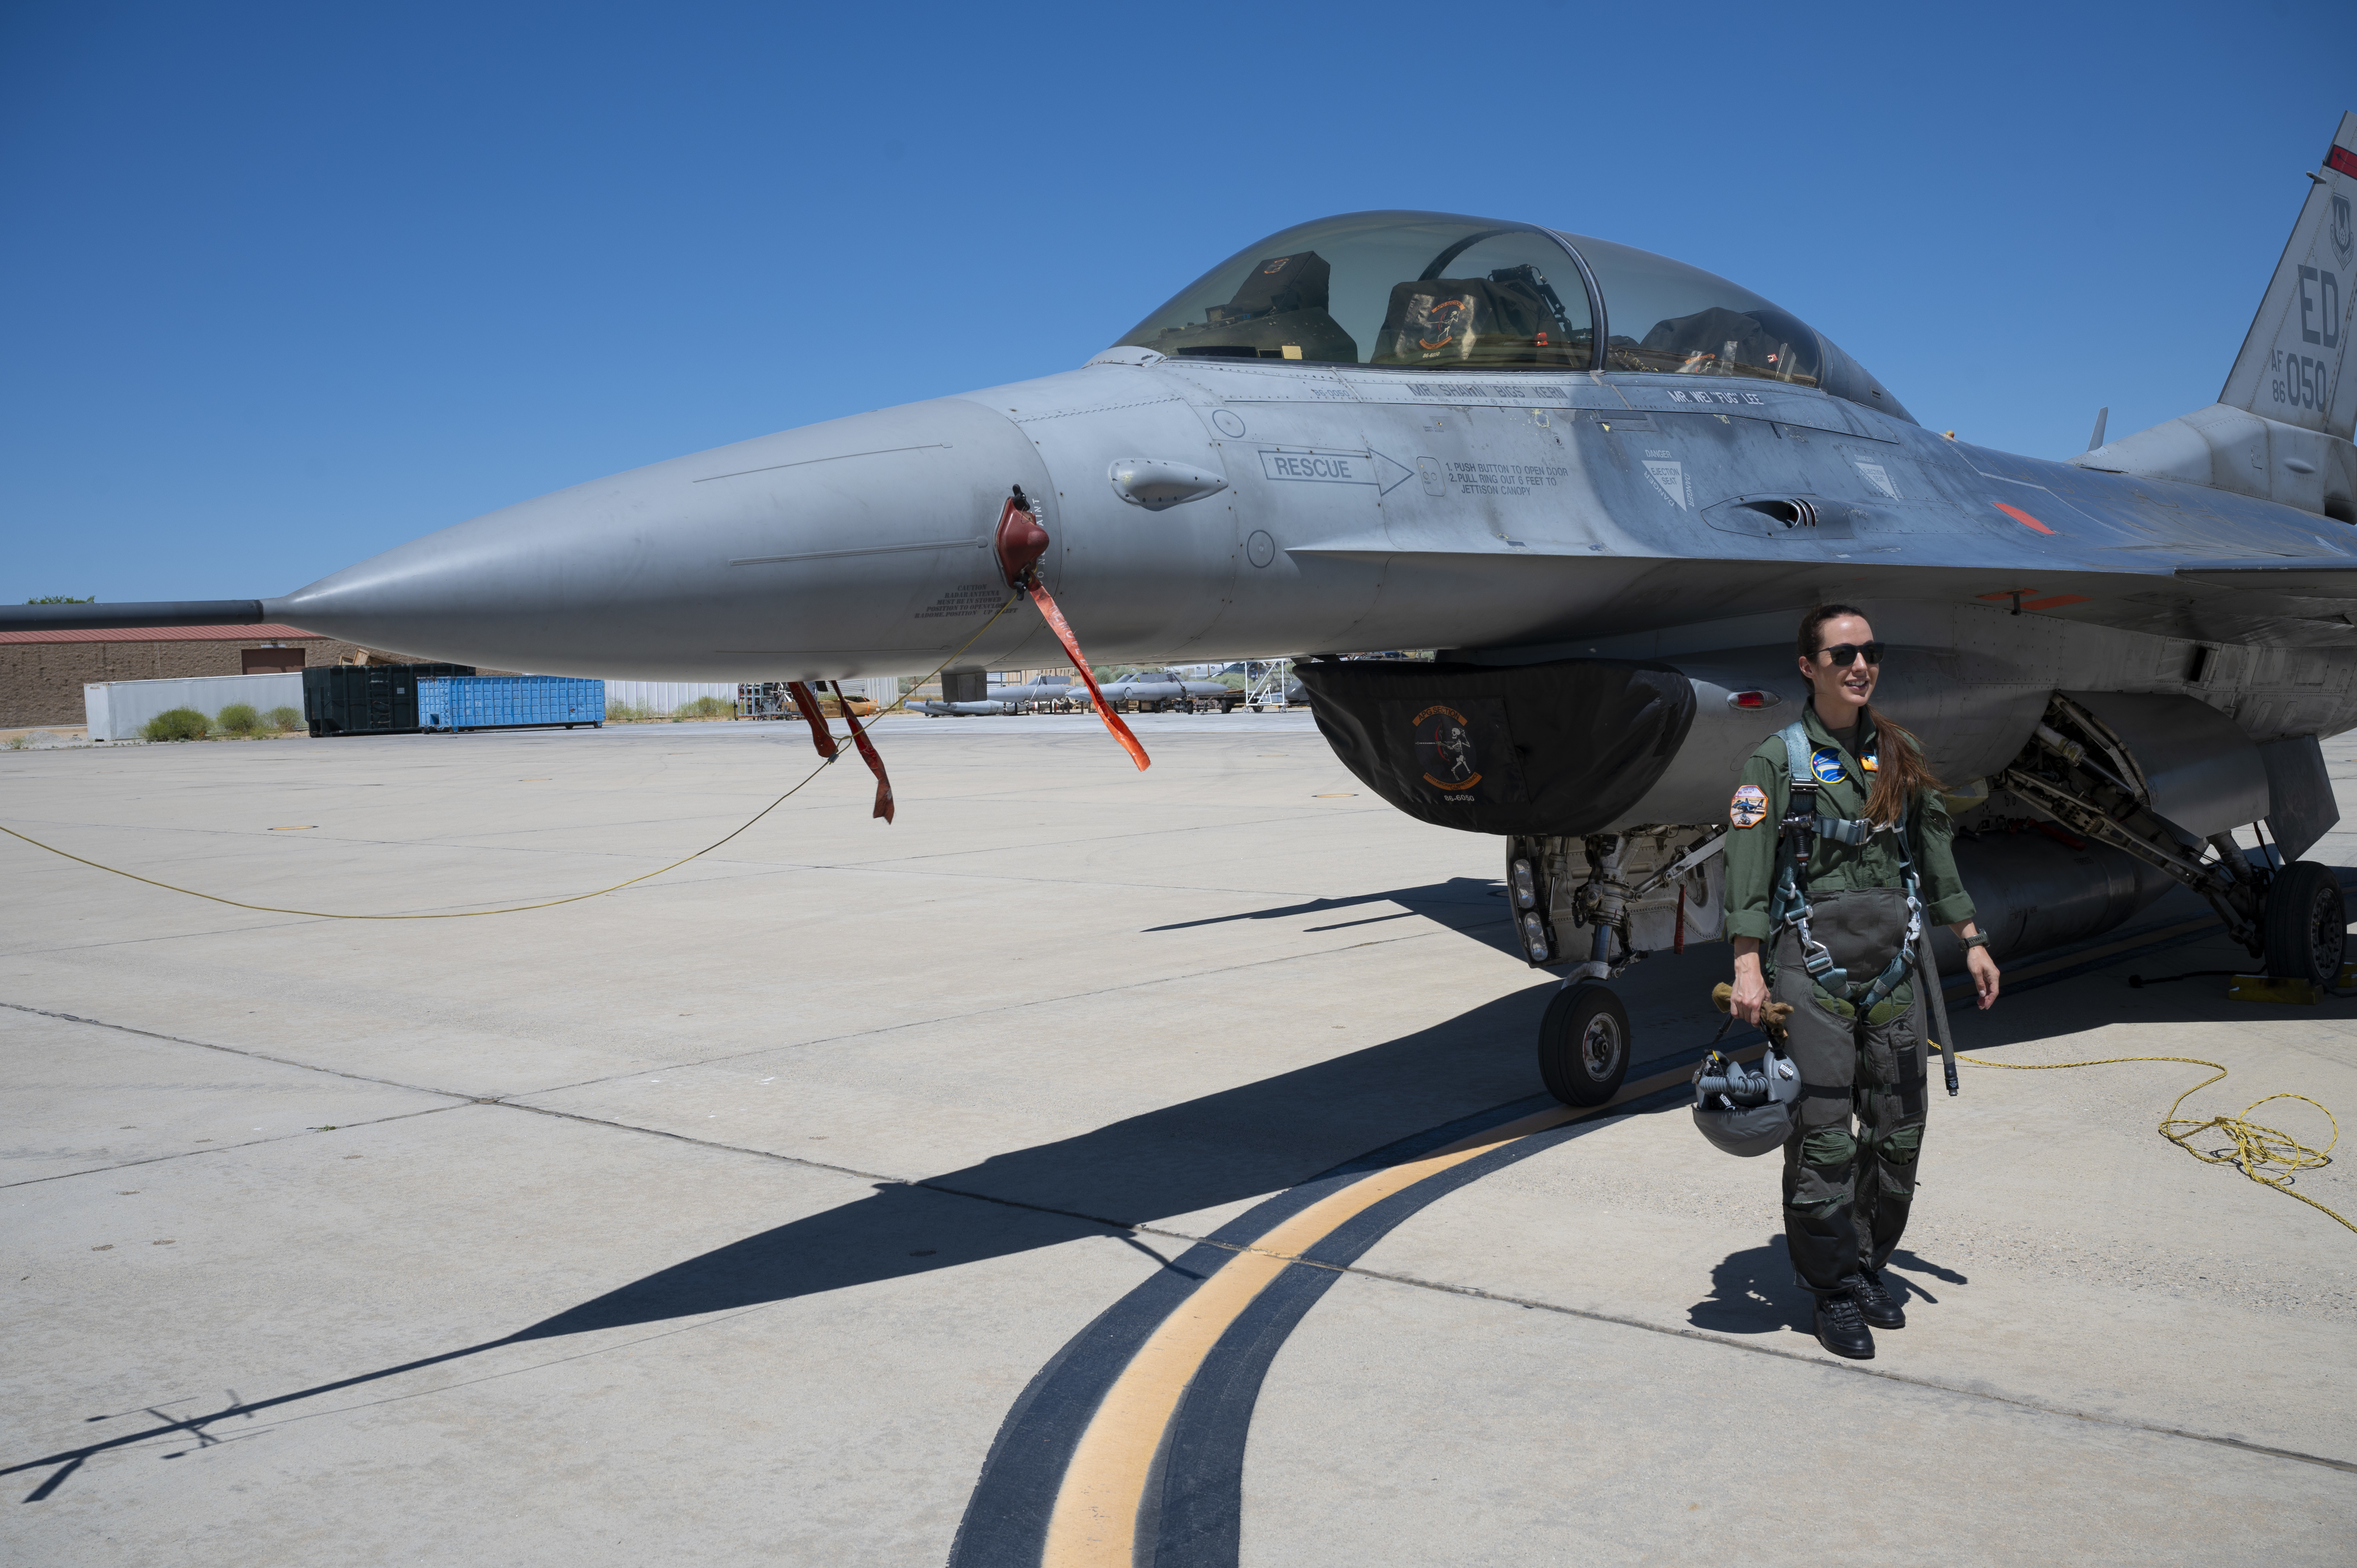 身为美国空军试飞员学校的现役学员，来自瑞士空军的试飞员学员法妮·绍莱正在位于美国爱德华兹空军基地为其飞行做准备工作。2024年6月8日从空军试飞员学校毕业后，她就会成为瑞士历史上第一位女性试飞员。绍莱也是瑞士空军第一位获得战斗机飞行员资格的女性。